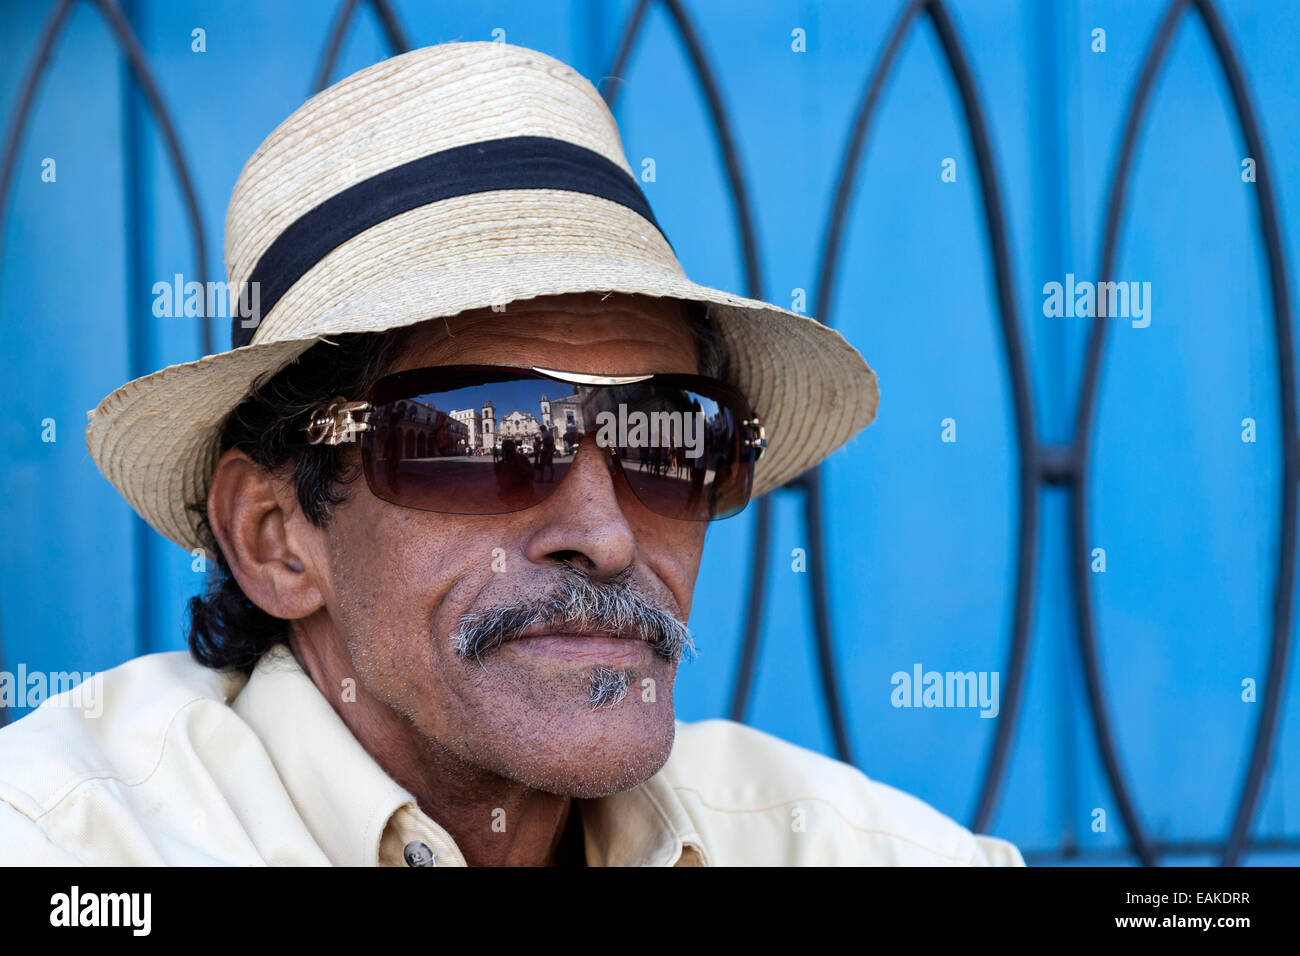 Kubanische Mann in Alt-Havanna, Porträt, Havana Kathedrale spiegelt sich in seine Sonnenbrille, Havanna, Kuba Stockfoto